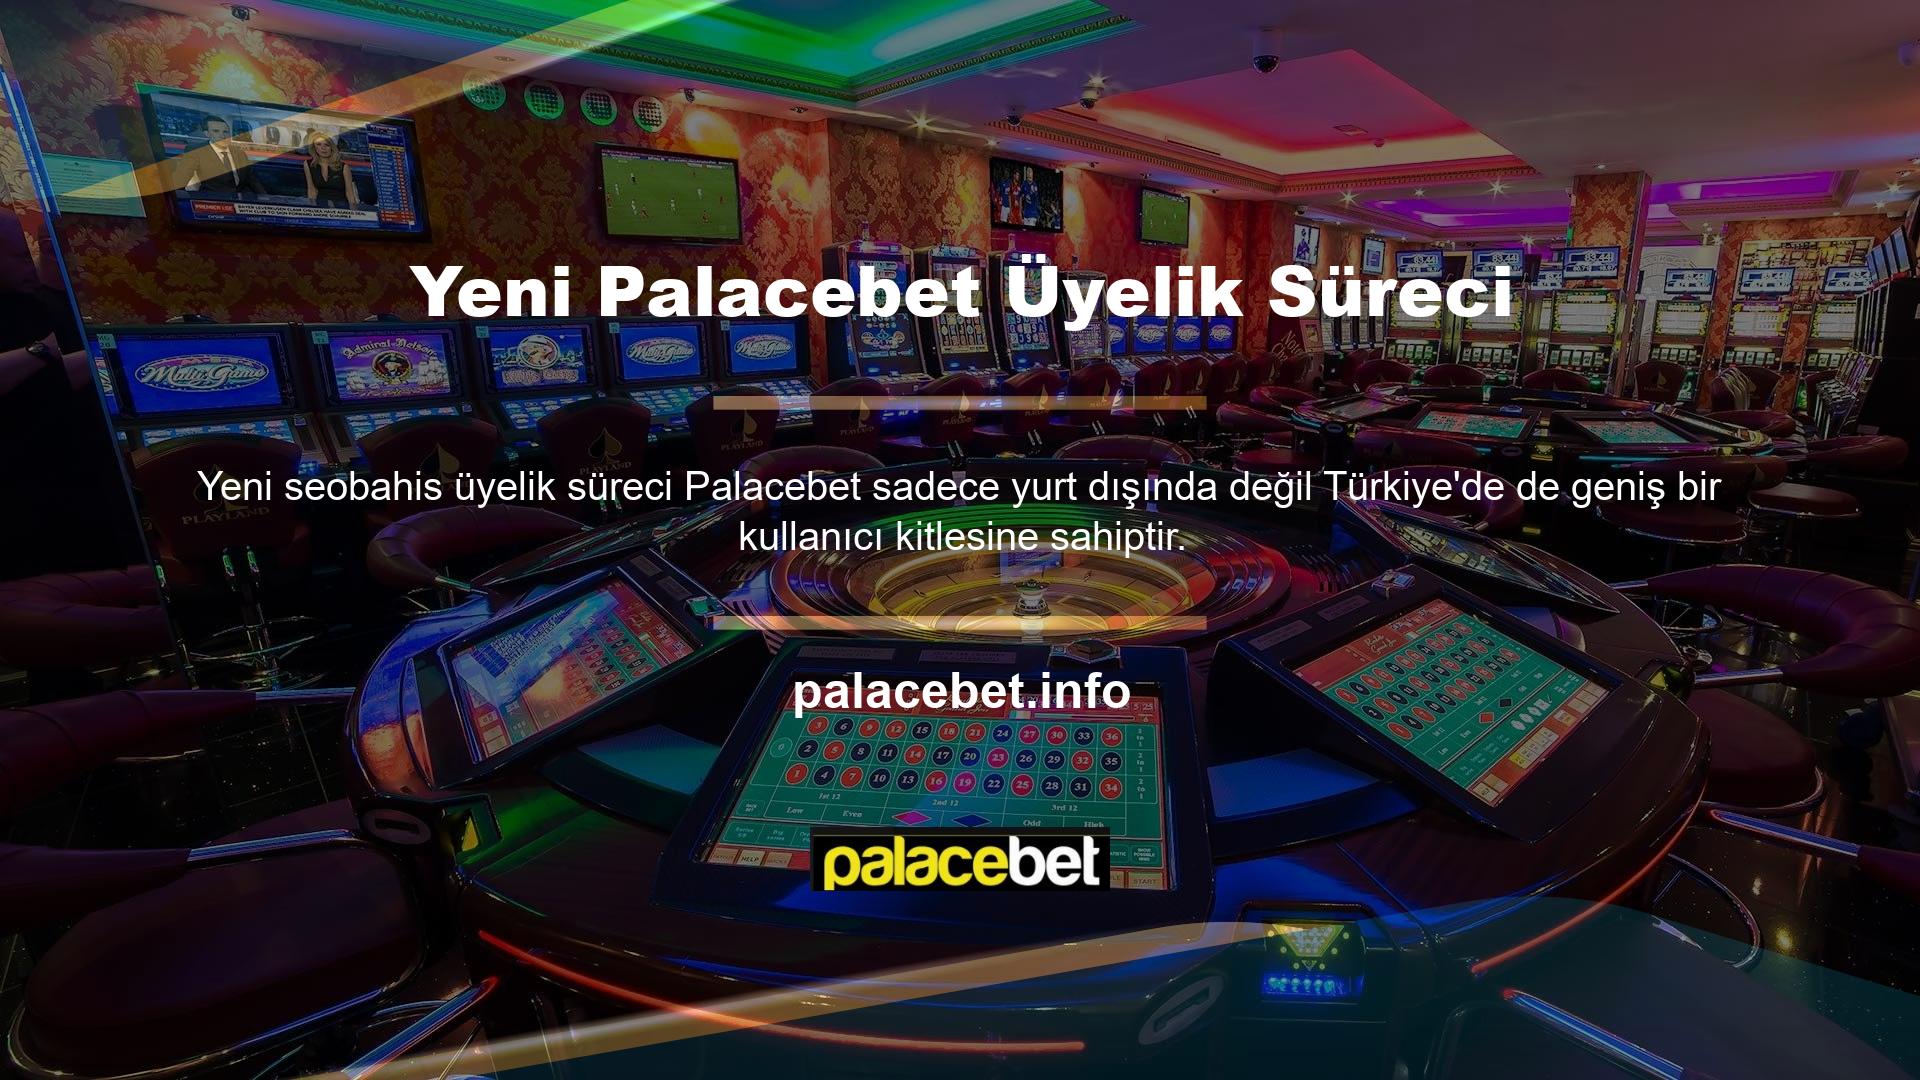 Palacebet, oyun endüstrisinde faaliyet göstermektedir ve üyelerine güvenli bir oyun ortamı sağlamak için lisansına güvenmektedir